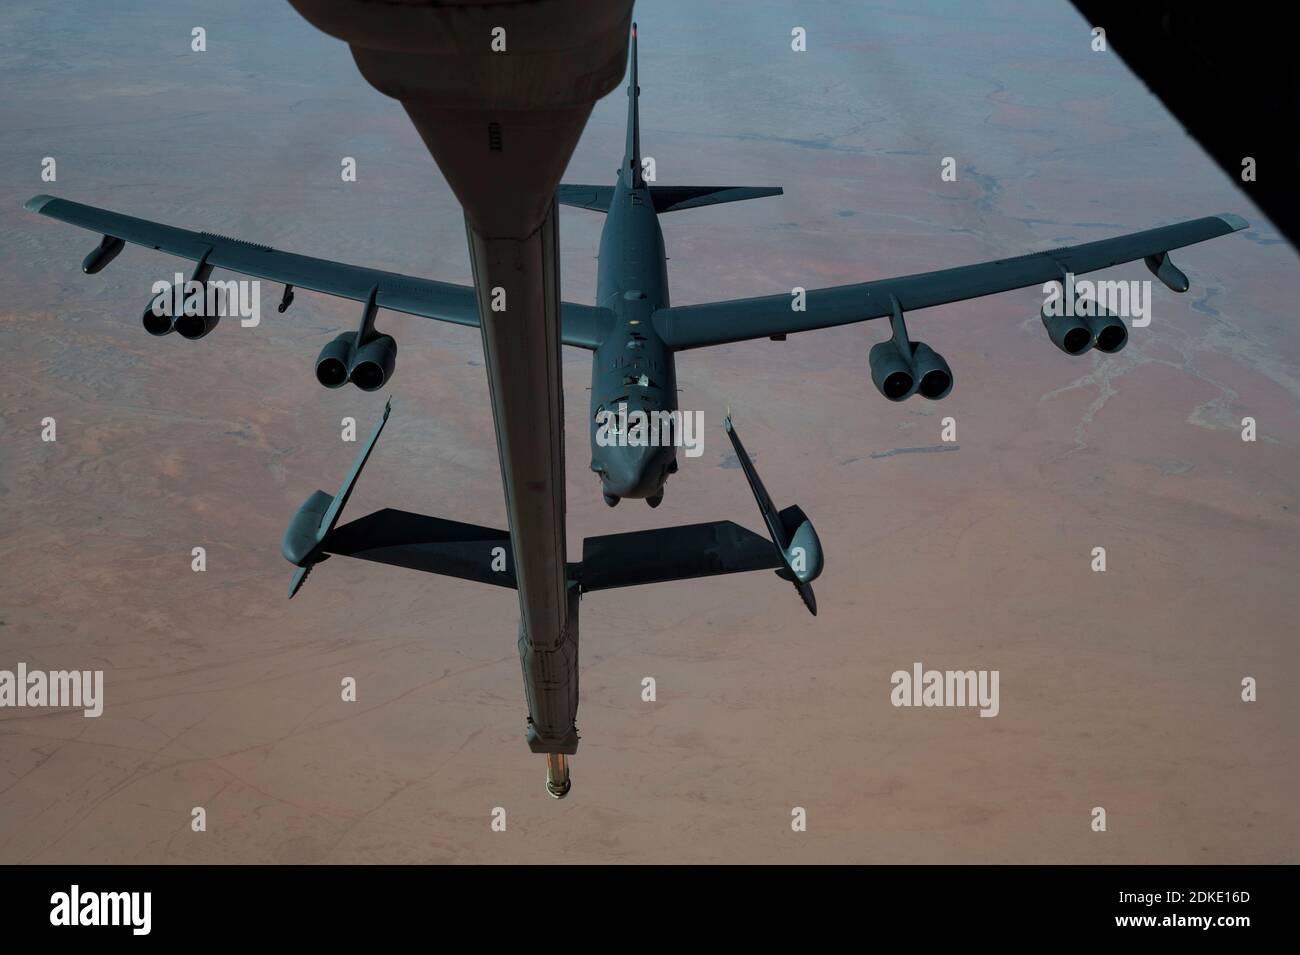 Un bombardier stratégique B-52 Stratofortress de la US Air Force de la 2e Escadre Bomb, positions pour ravitailler en carburant à partir d'un KC-135 Stratotanker lors d'une mission de la Force opérationnelle bombardier de plusieurs jours le 10 décembre 2020 au-dessus du Qatar. Le bombardier a été déplacé dans la région à la suite d'une augmentation des tensions avec l'Iran. Banque D'Images